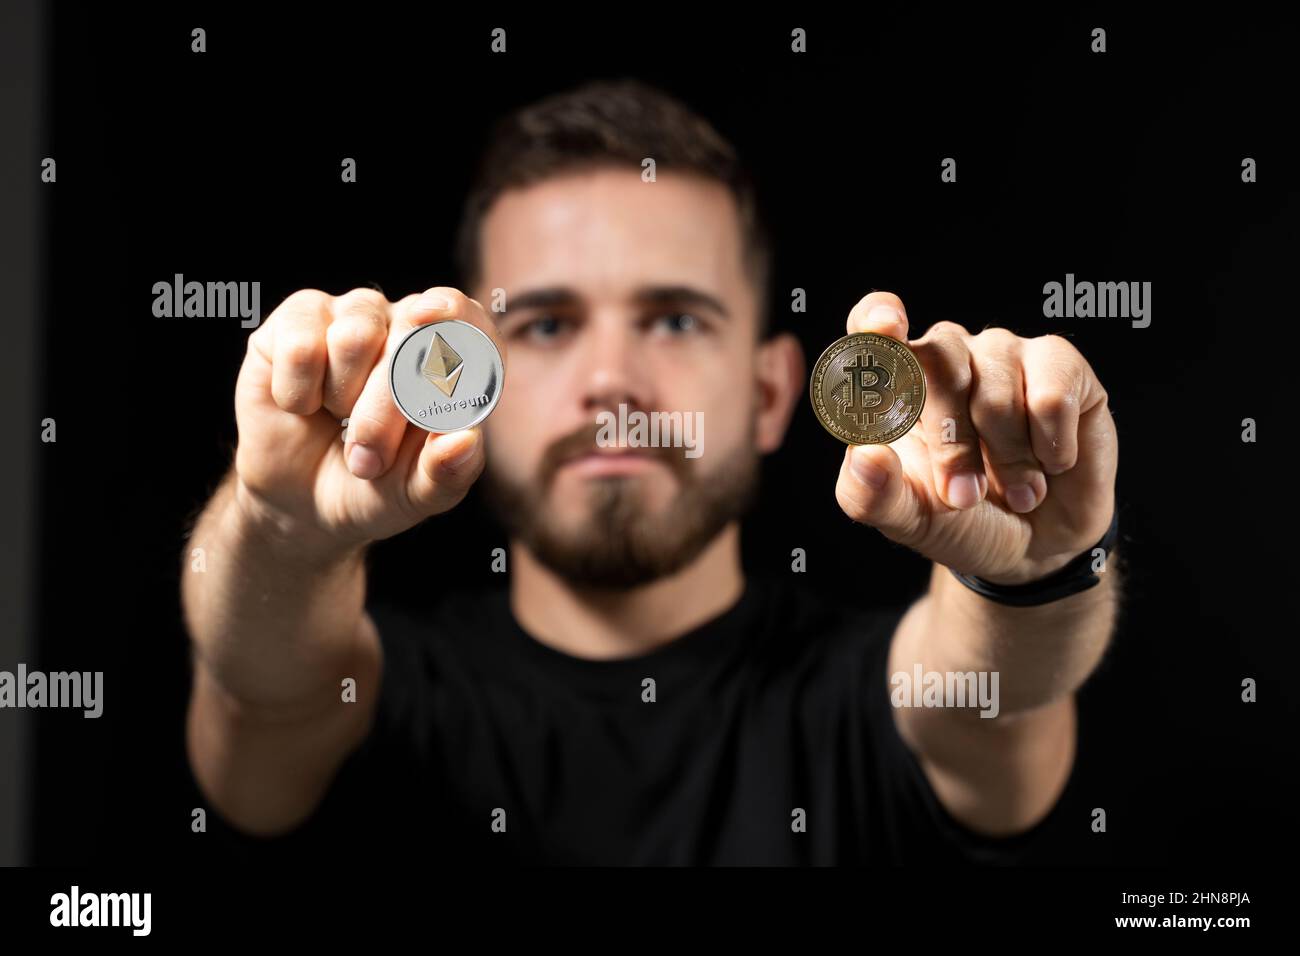 Junger bärtiger Mann mit virtueller Währung ethereum-Münze in einer Hand und Bitcoin-Münze in einer anderen auf schwarzem Hintergrund. Kryptowährung. Stockfoto